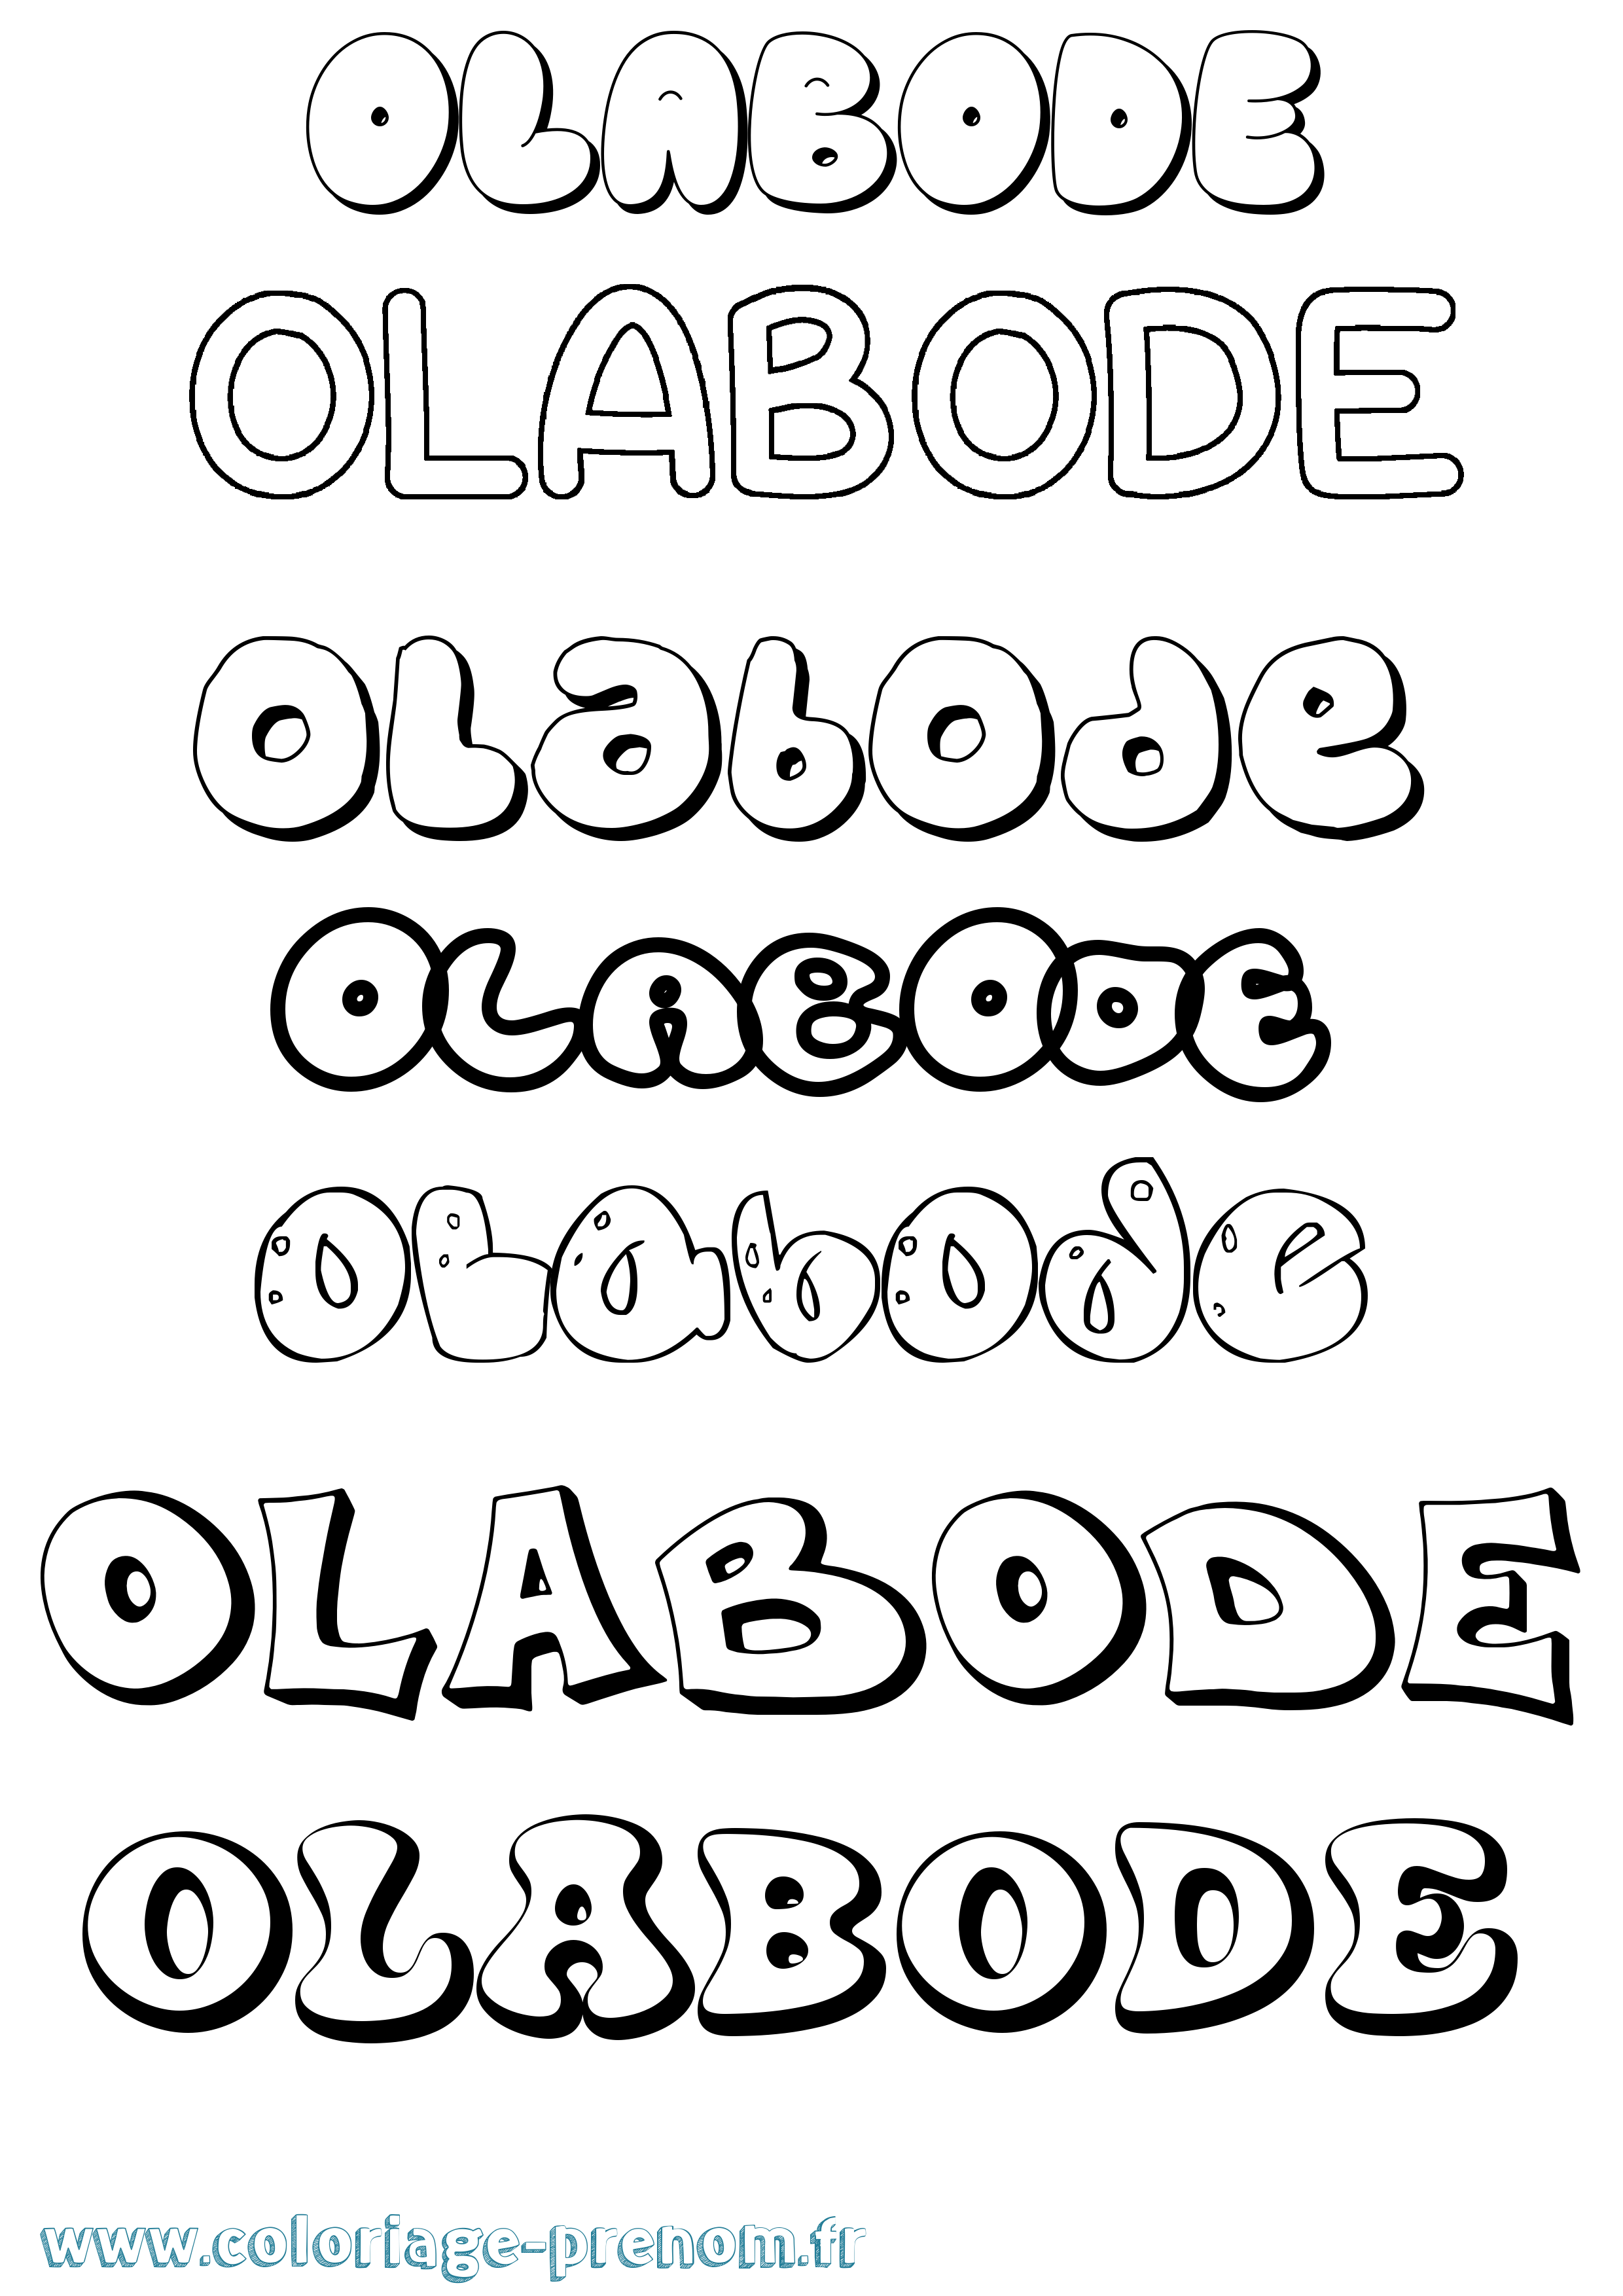 Coloriage prénom Olabode Bubble